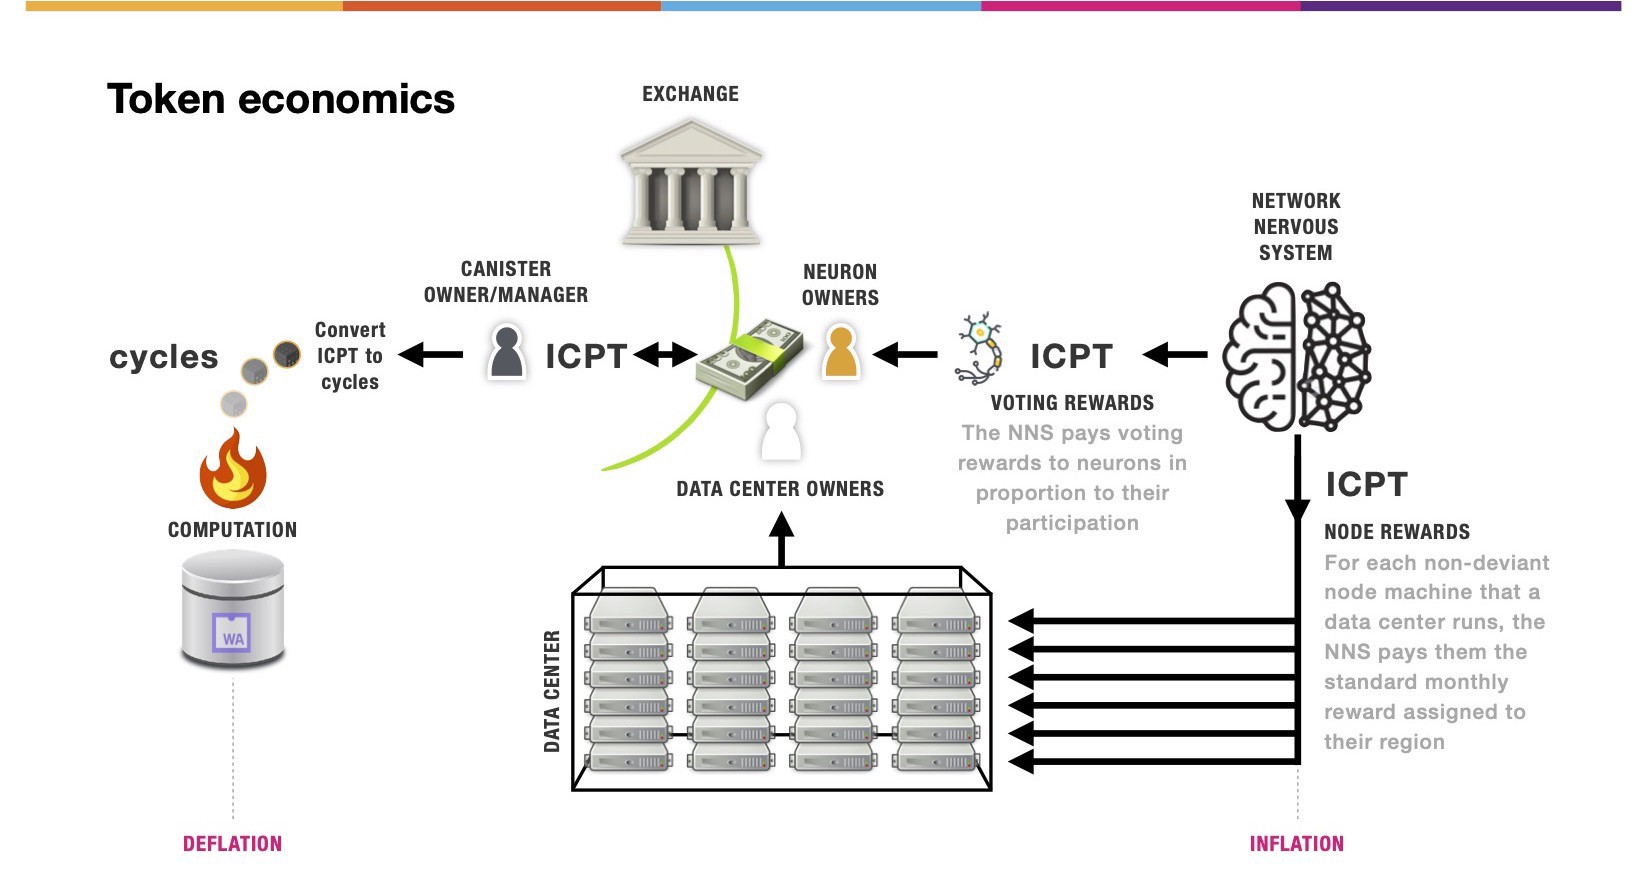 ICP token economics
internet computer protocol